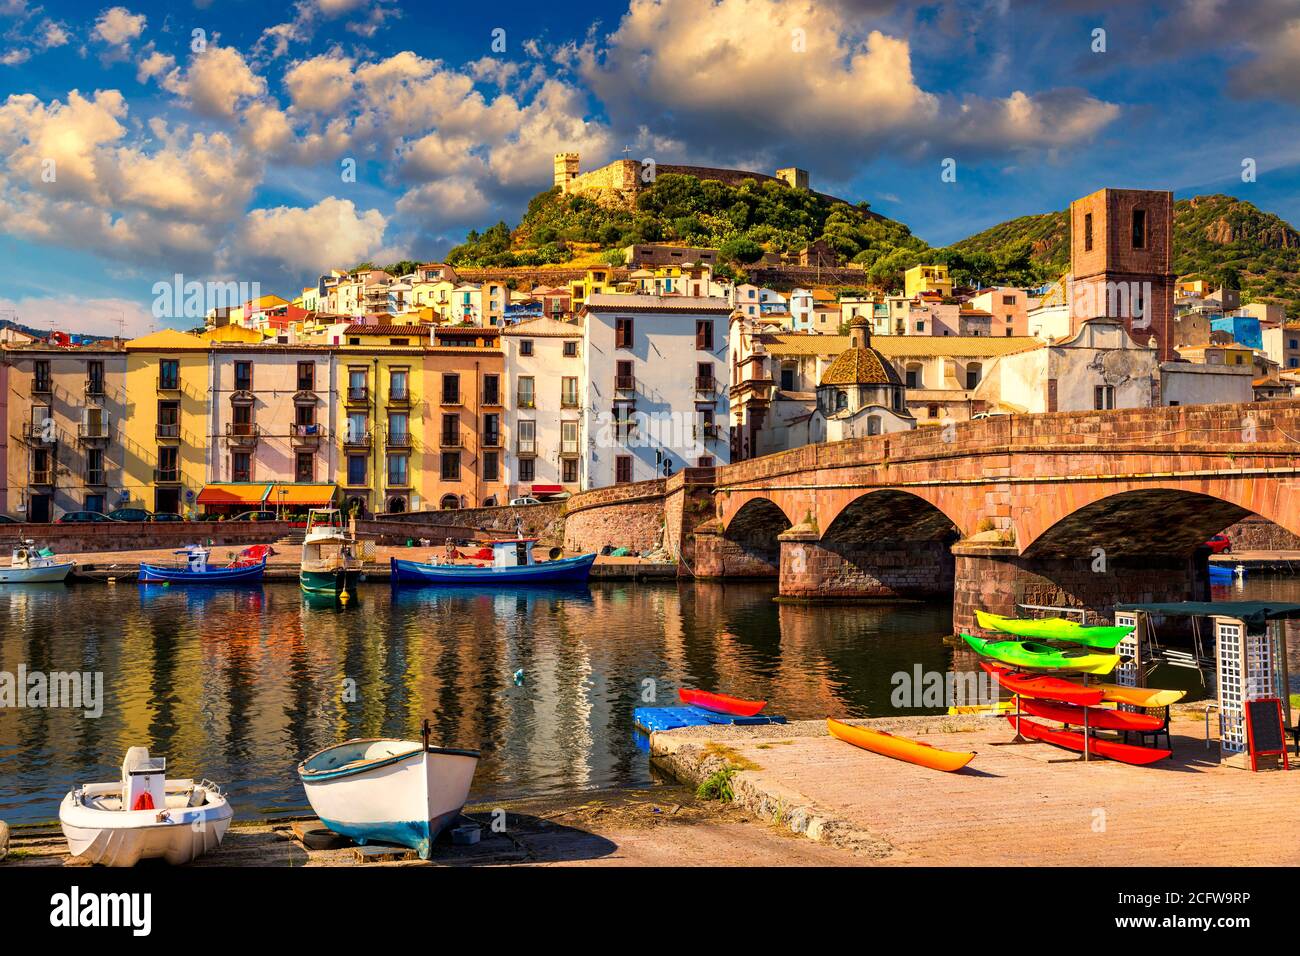 Schöne Sicht auf Bosa Stadt, Sardinien Insel, Italien. Reiseziel. Bosa Stadt mit Ponte Vecchio Brücke über den Fluss Temo. Wunderbarer Morgen Stockfoto